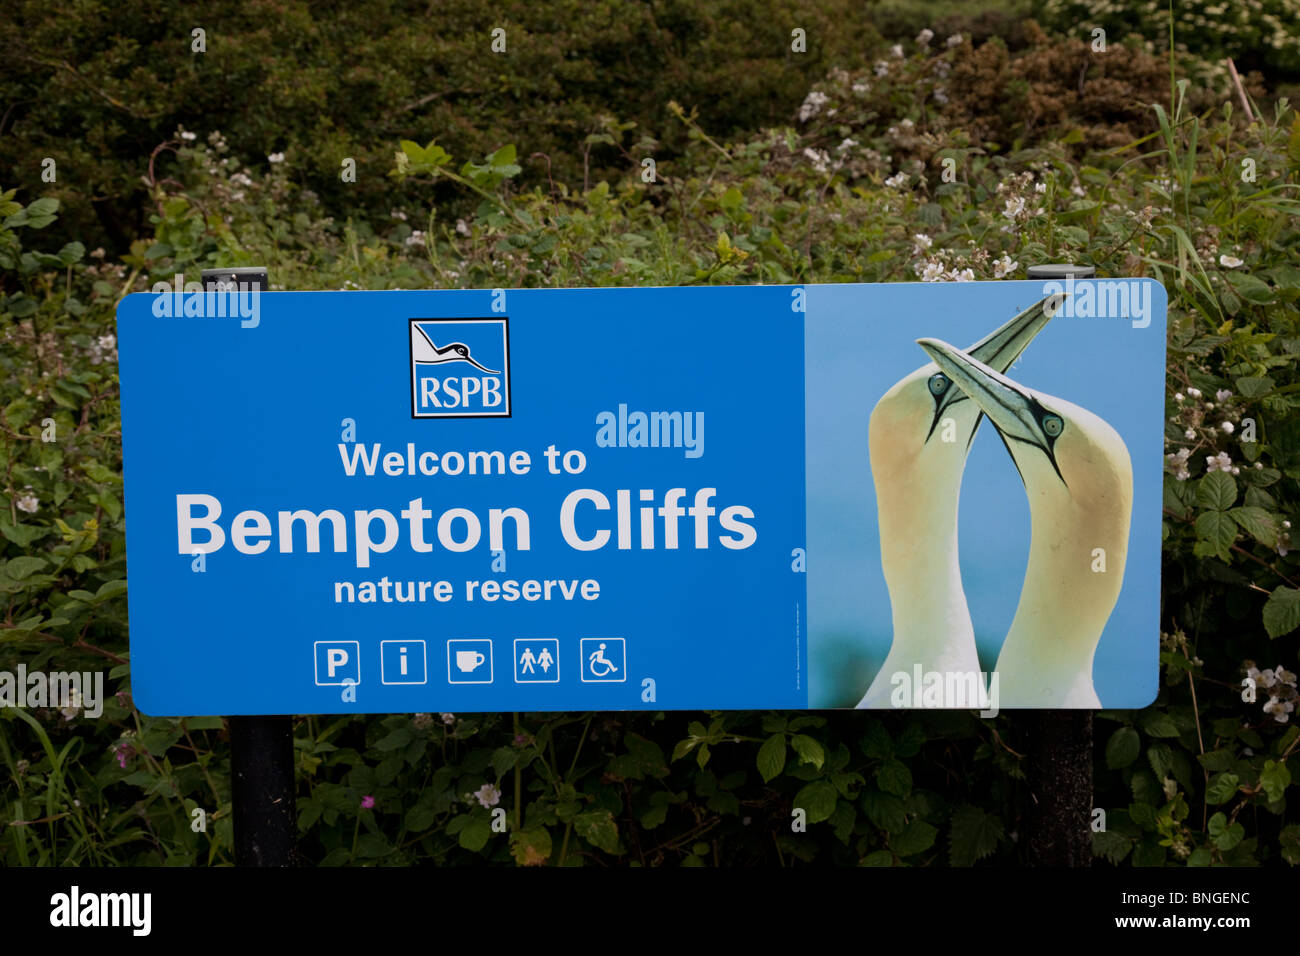 RSPB pancarte à l'entrée de la Réserve Naturelle de Bempton Cliffs Bridlington East Yorkshire UK Banque D'Images